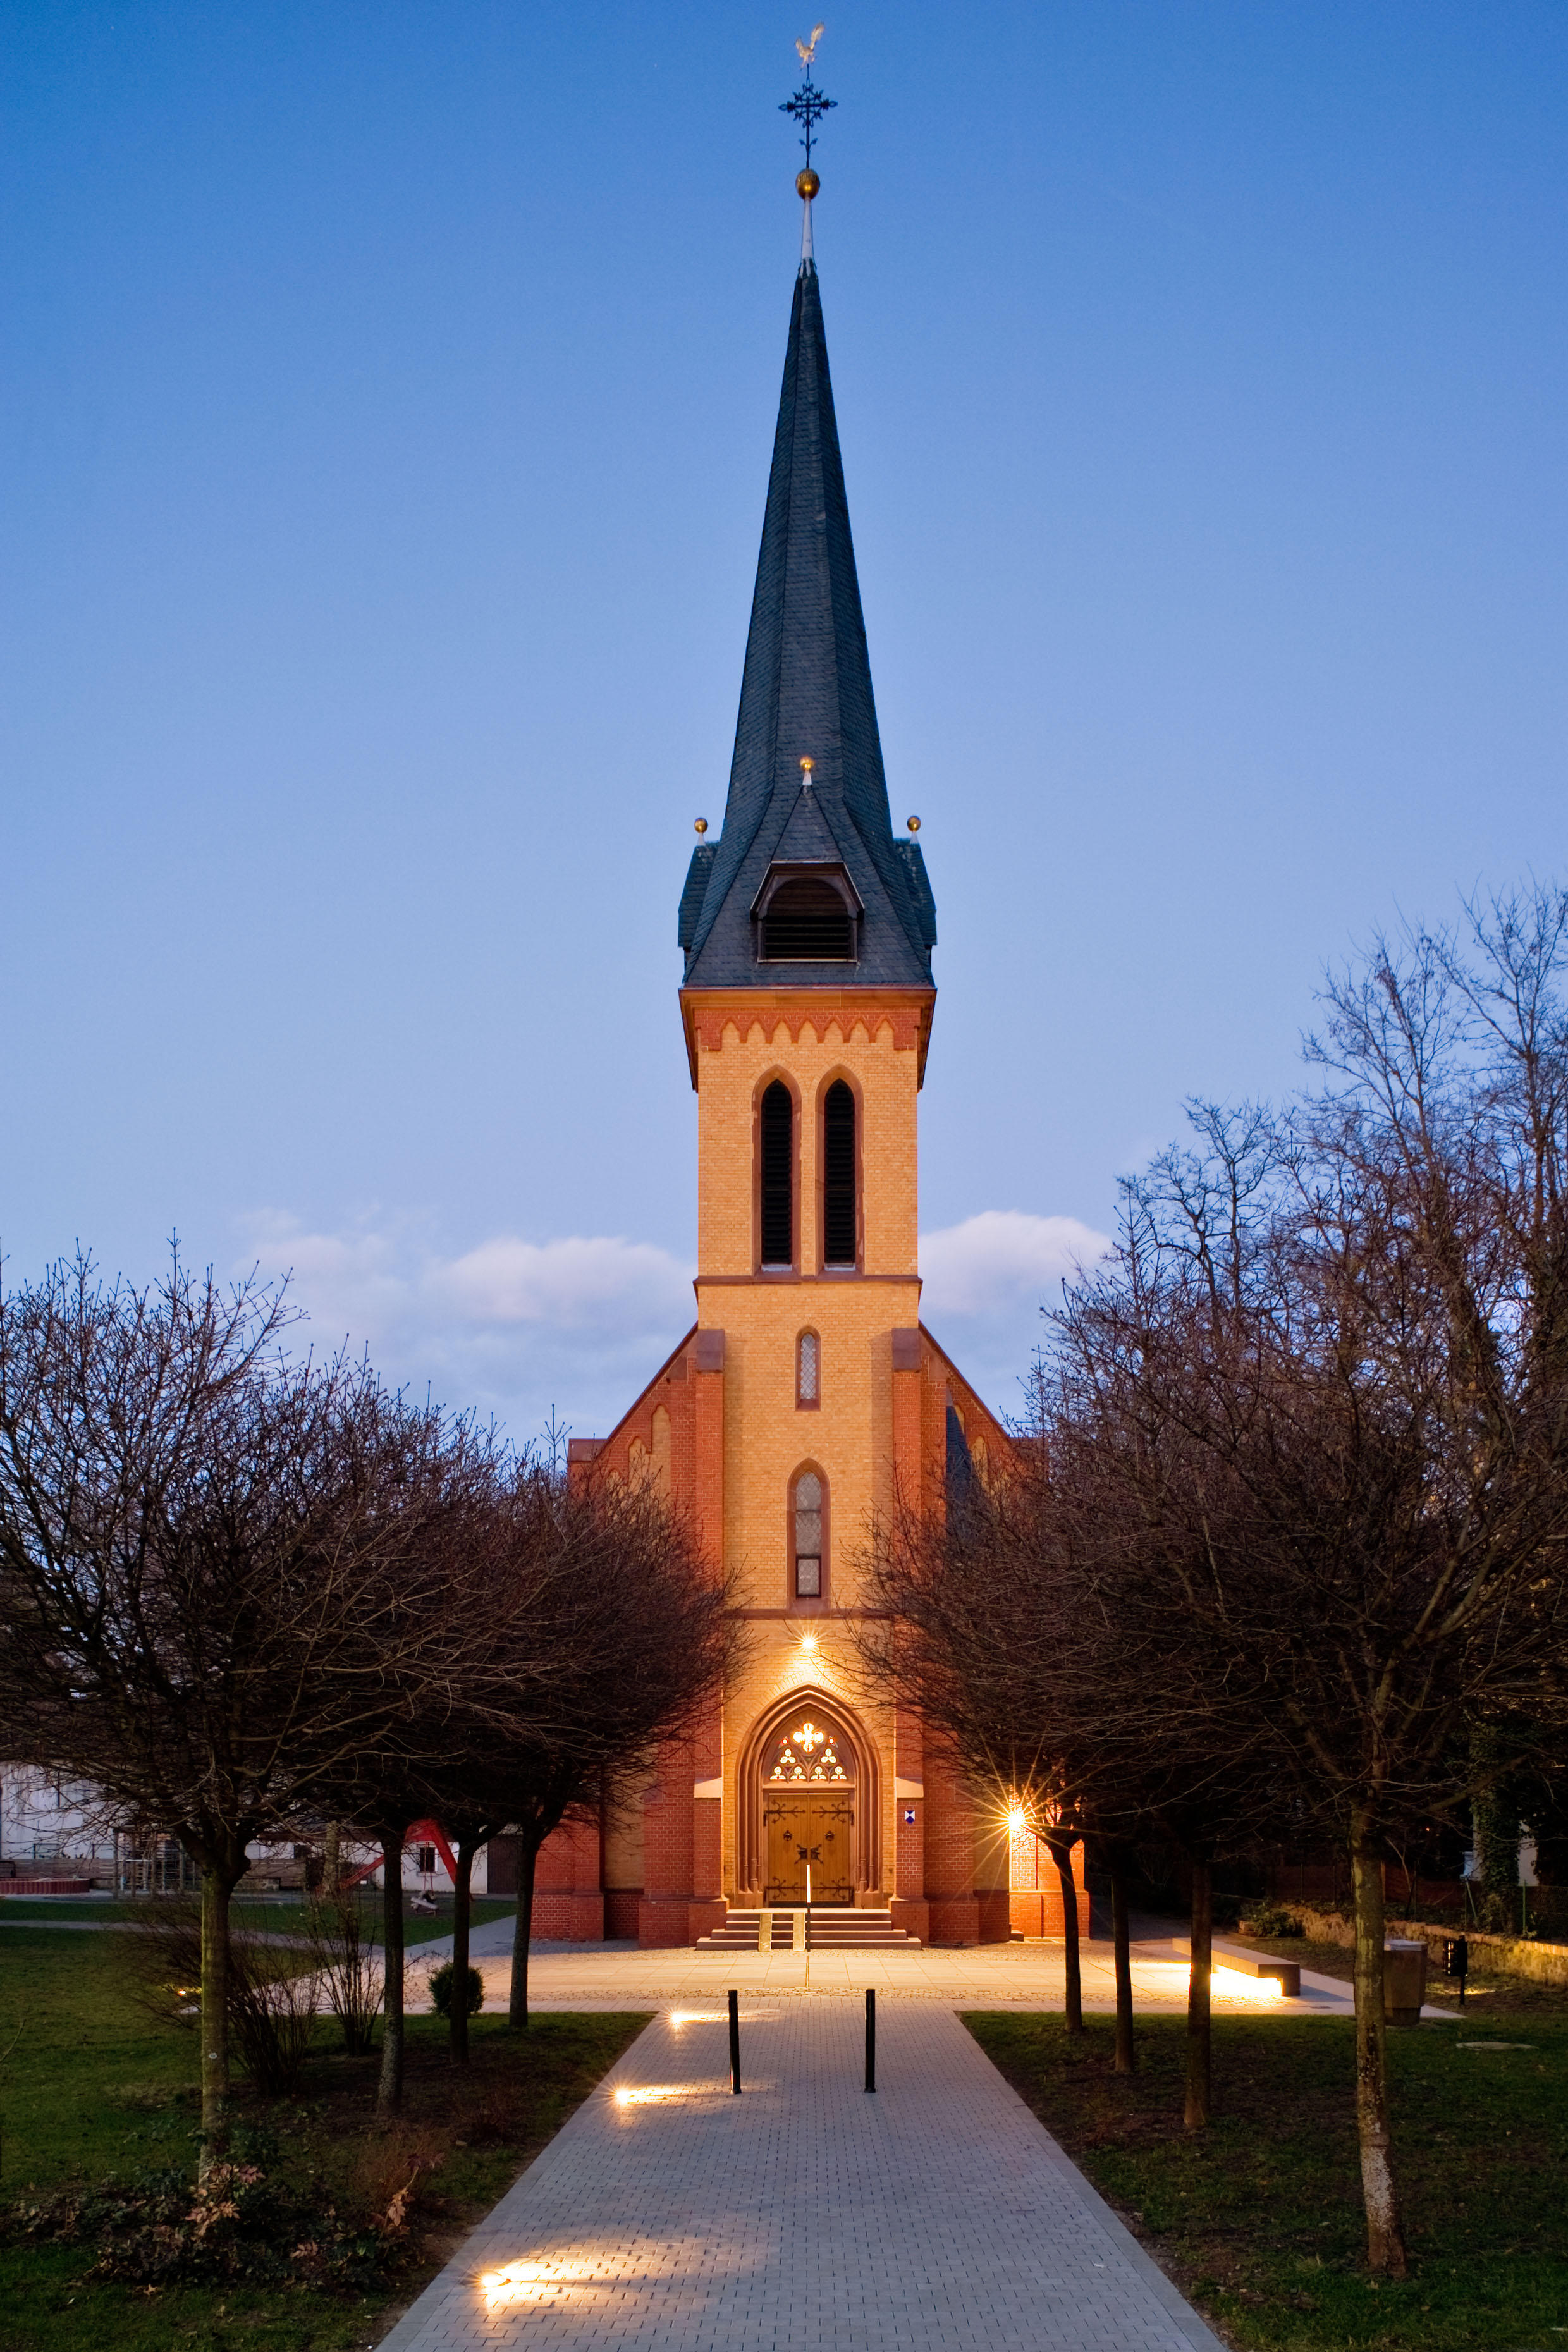 Das am Main gelegene Steinheim ist seit 1974 ein Stadtteil der Stadt Hanau. Der Ort, der früher zum Mainzer Erzstift gehörte, ist katholisch geprägt. 1853 wurde in Steinheim eine evangelische Gemeinde gegründet, die zunächst noch mit Seligenstadt verbunde